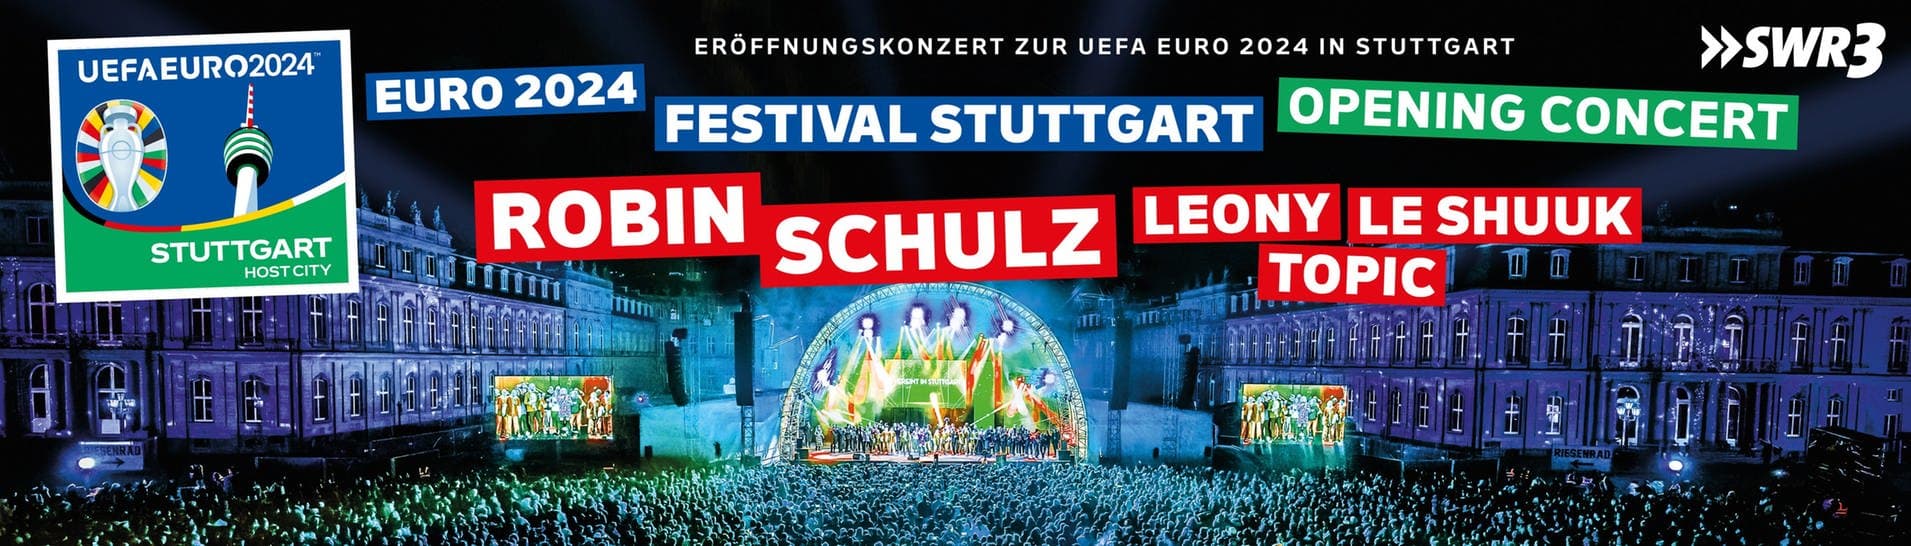 Euro 2024 Festival Stuttgart Opening Concert Banner